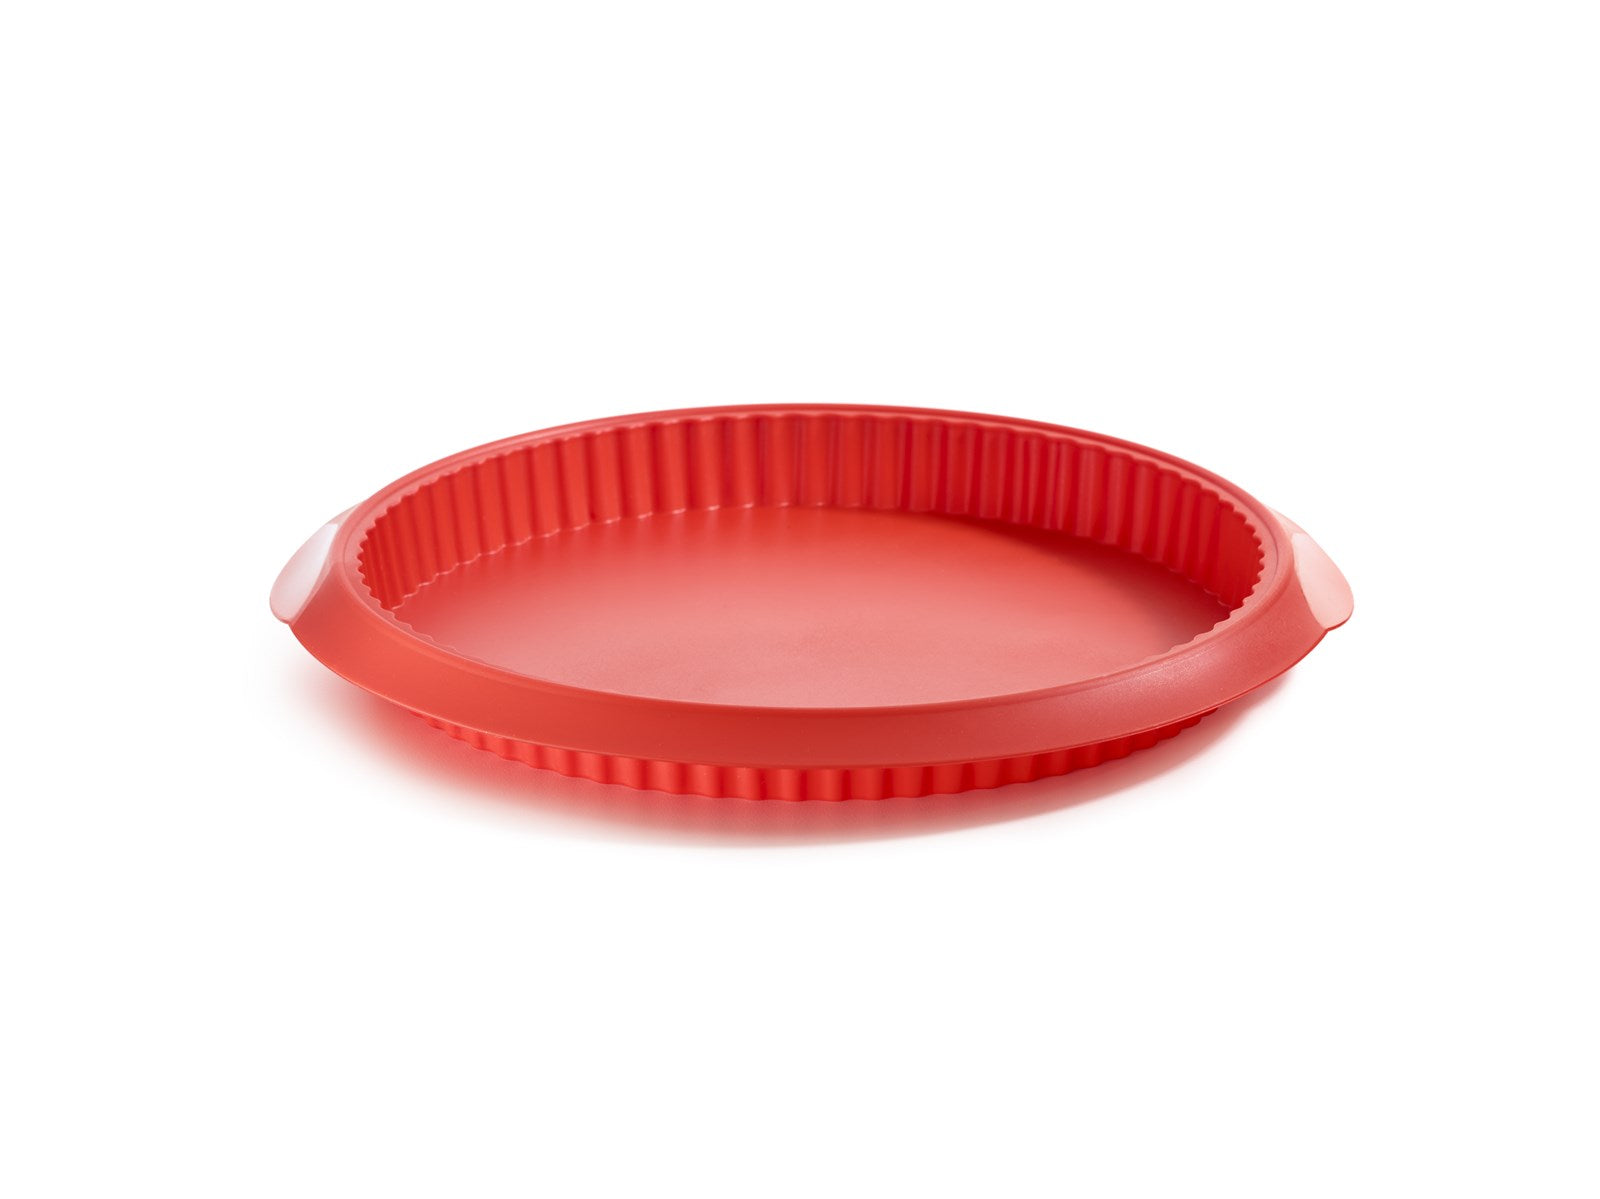 Backform Quiche rund, rot, 28 cm in Rot präsentiert im Onlineshop von KAQTU Design AG. Backen ist von Lékué